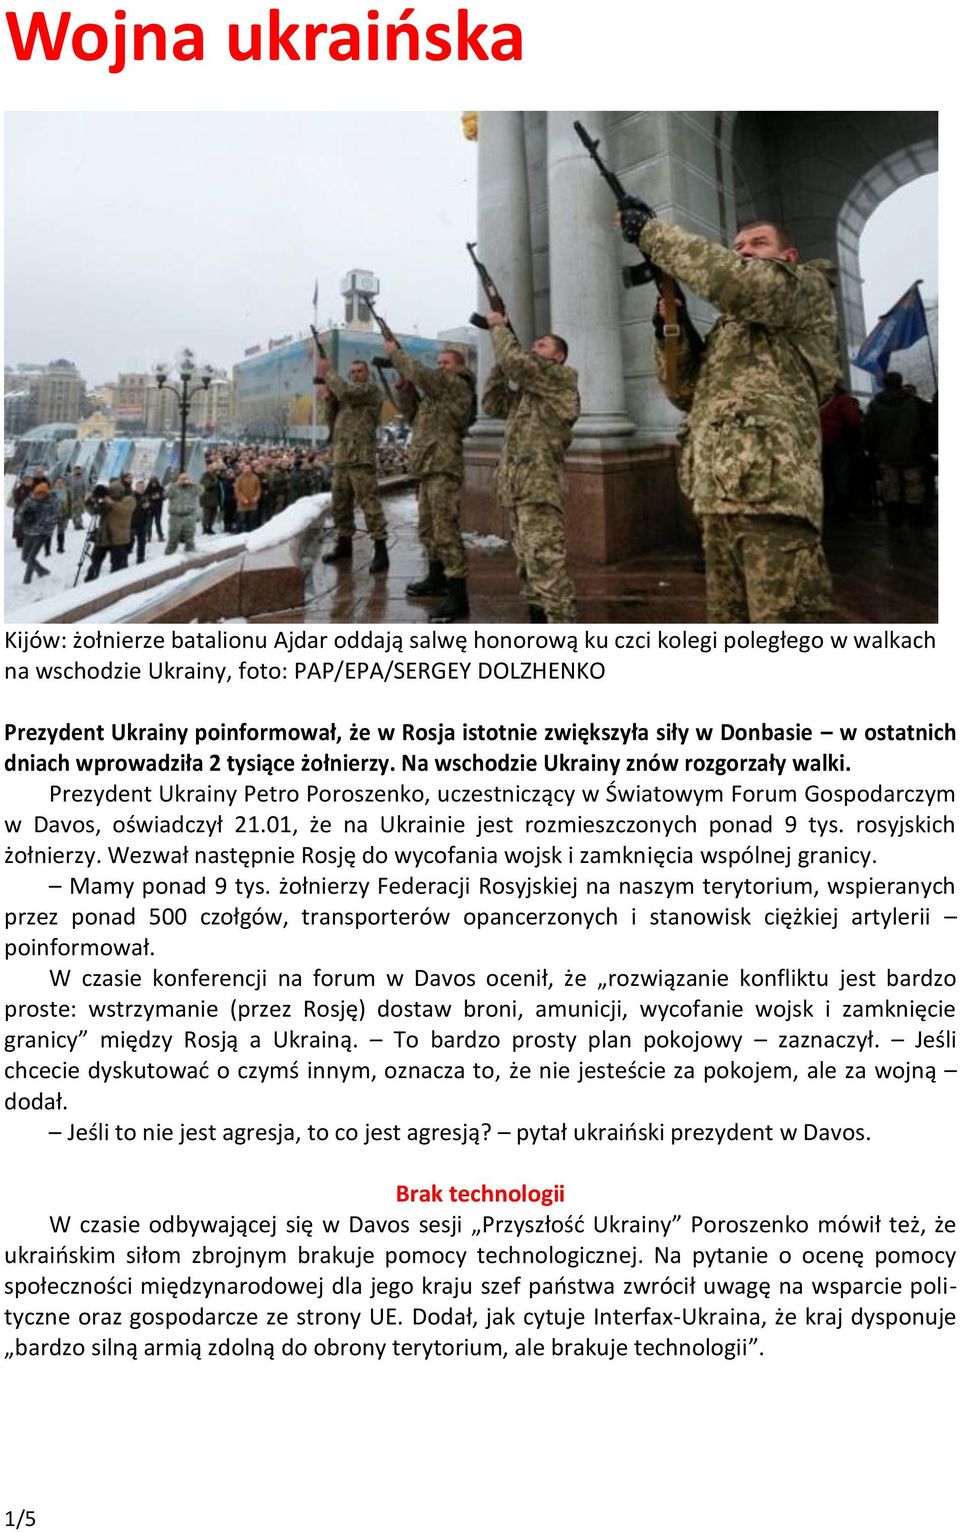 Prezydent Ukrainy Petro Poroszenko, uczestniczący w Światowym Forum Gospodarczym w Davos, oświadczył 21.01, że na Ukrainie jest rozmieszczonych ponad 9 tys. rosyjskich żołnierzy.